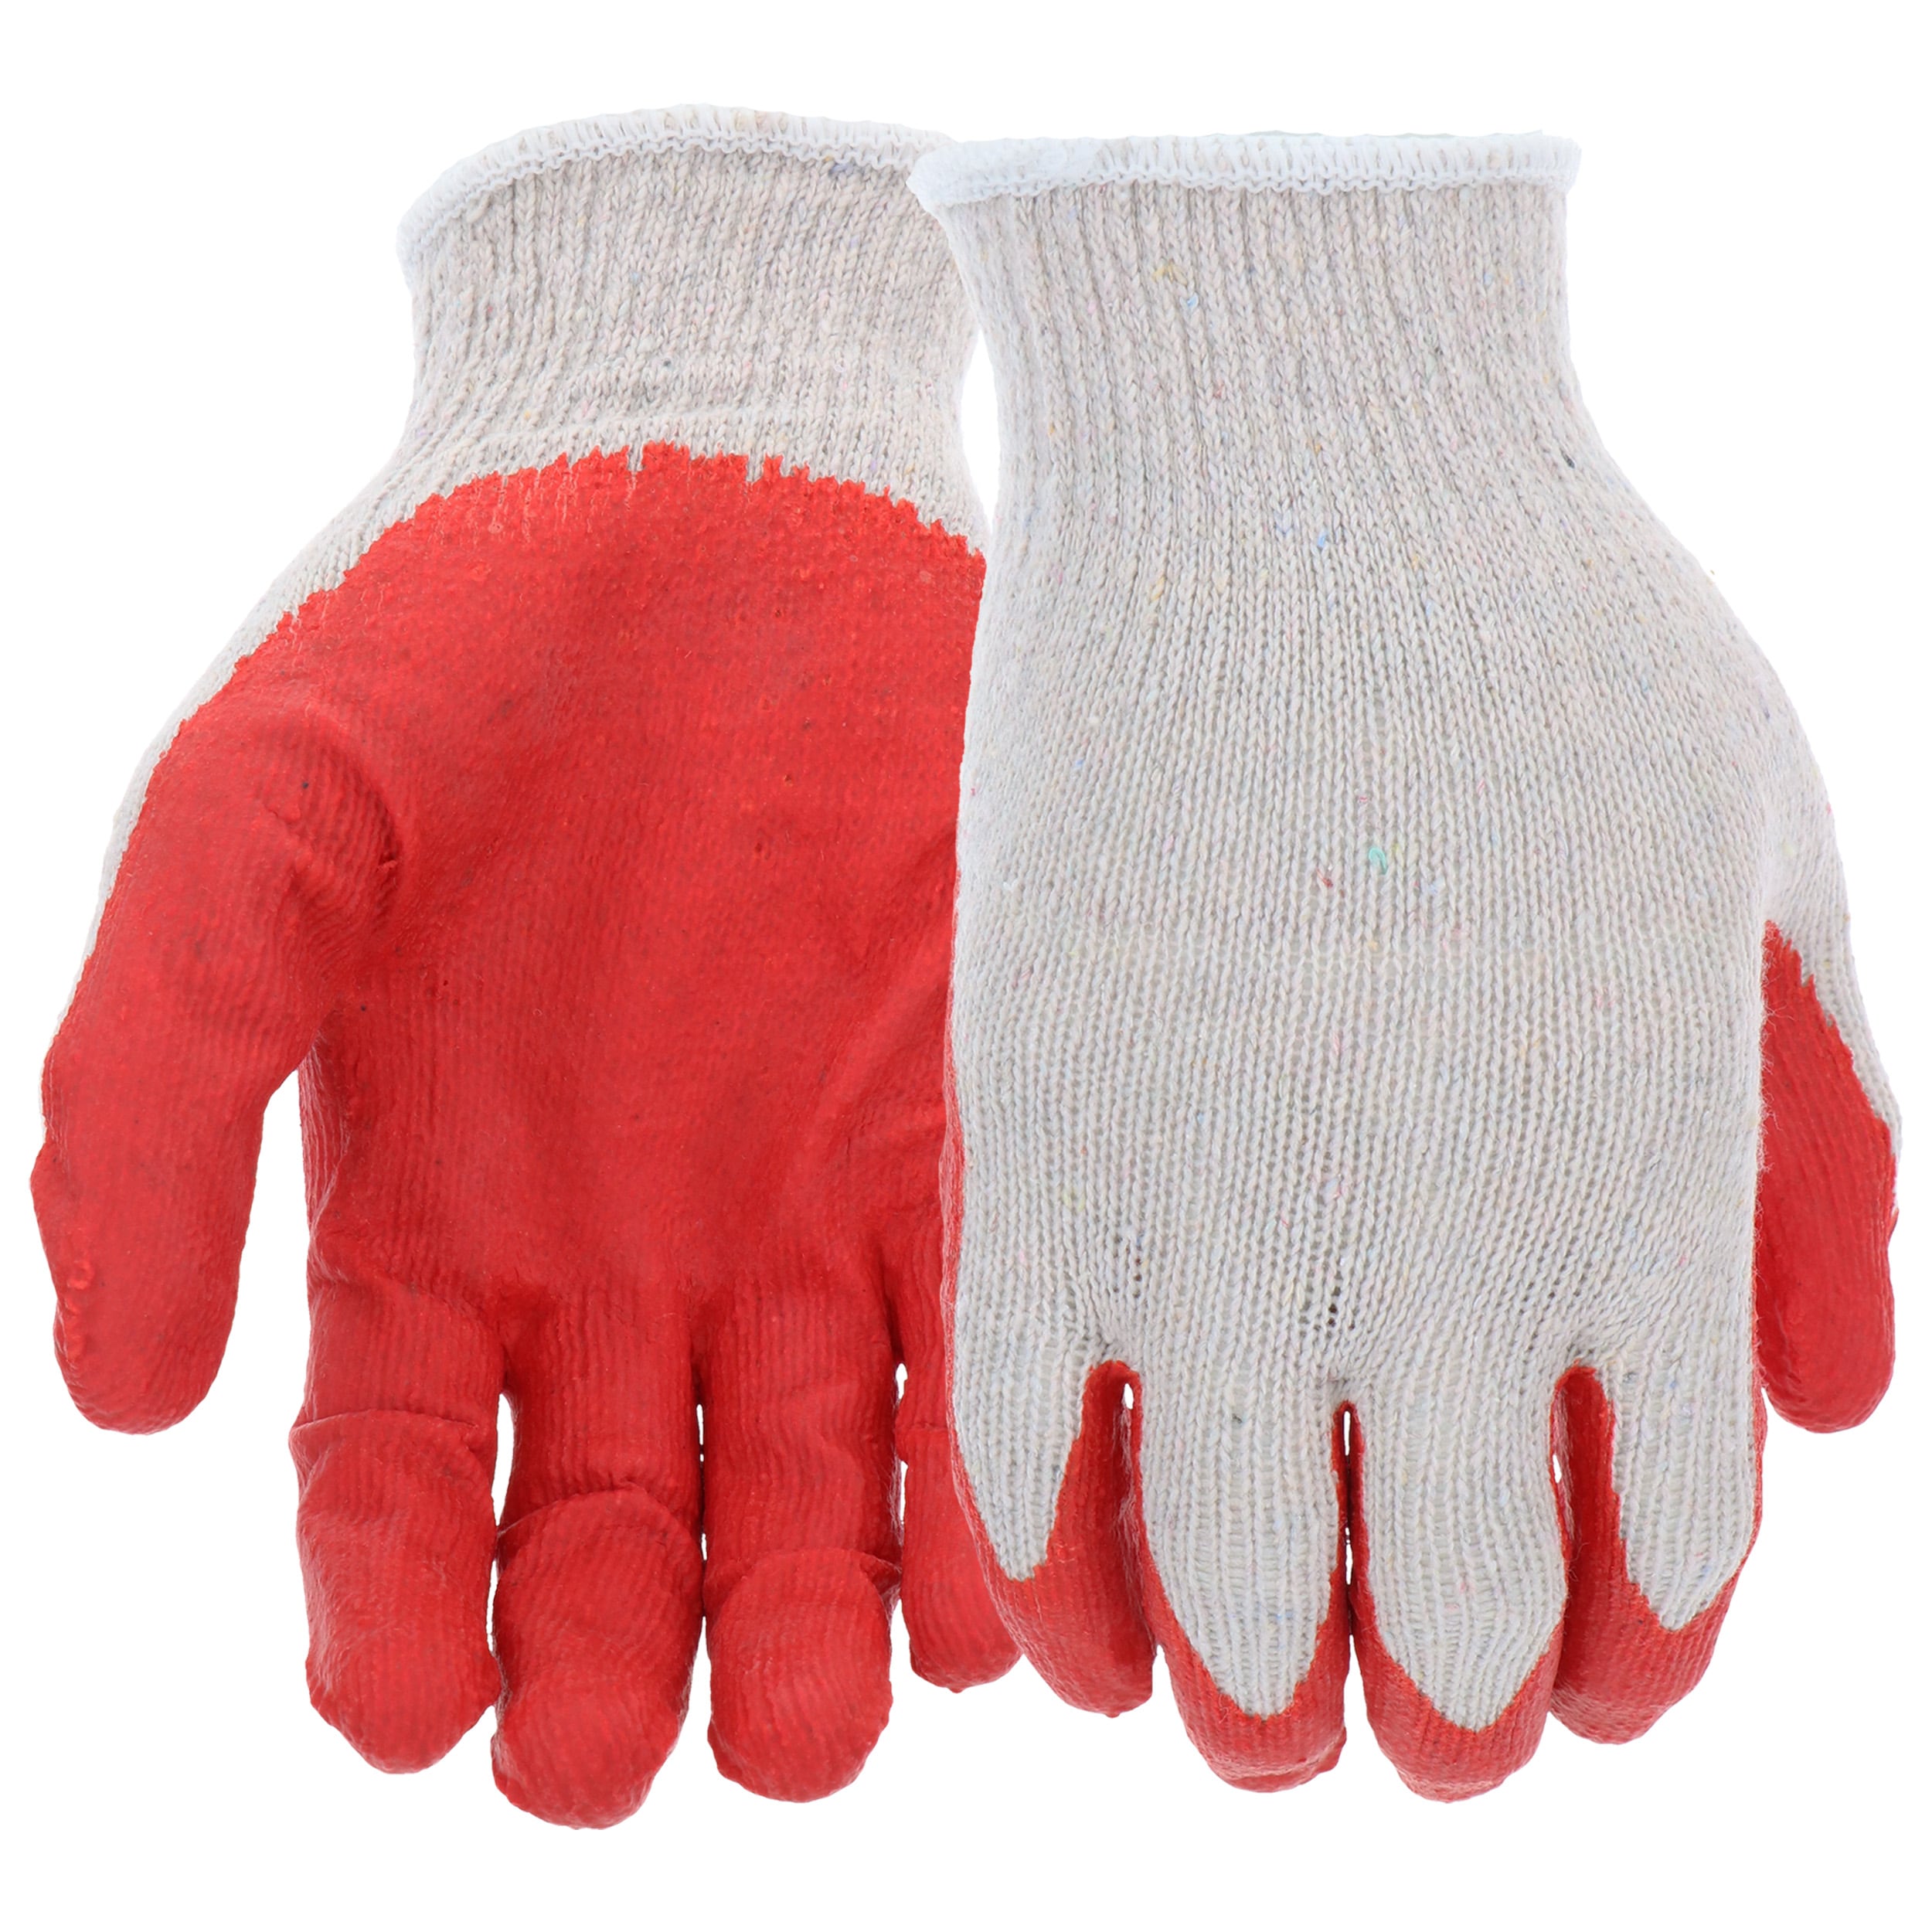 Kevlar Gloves 20s/1 Twisted Yarn